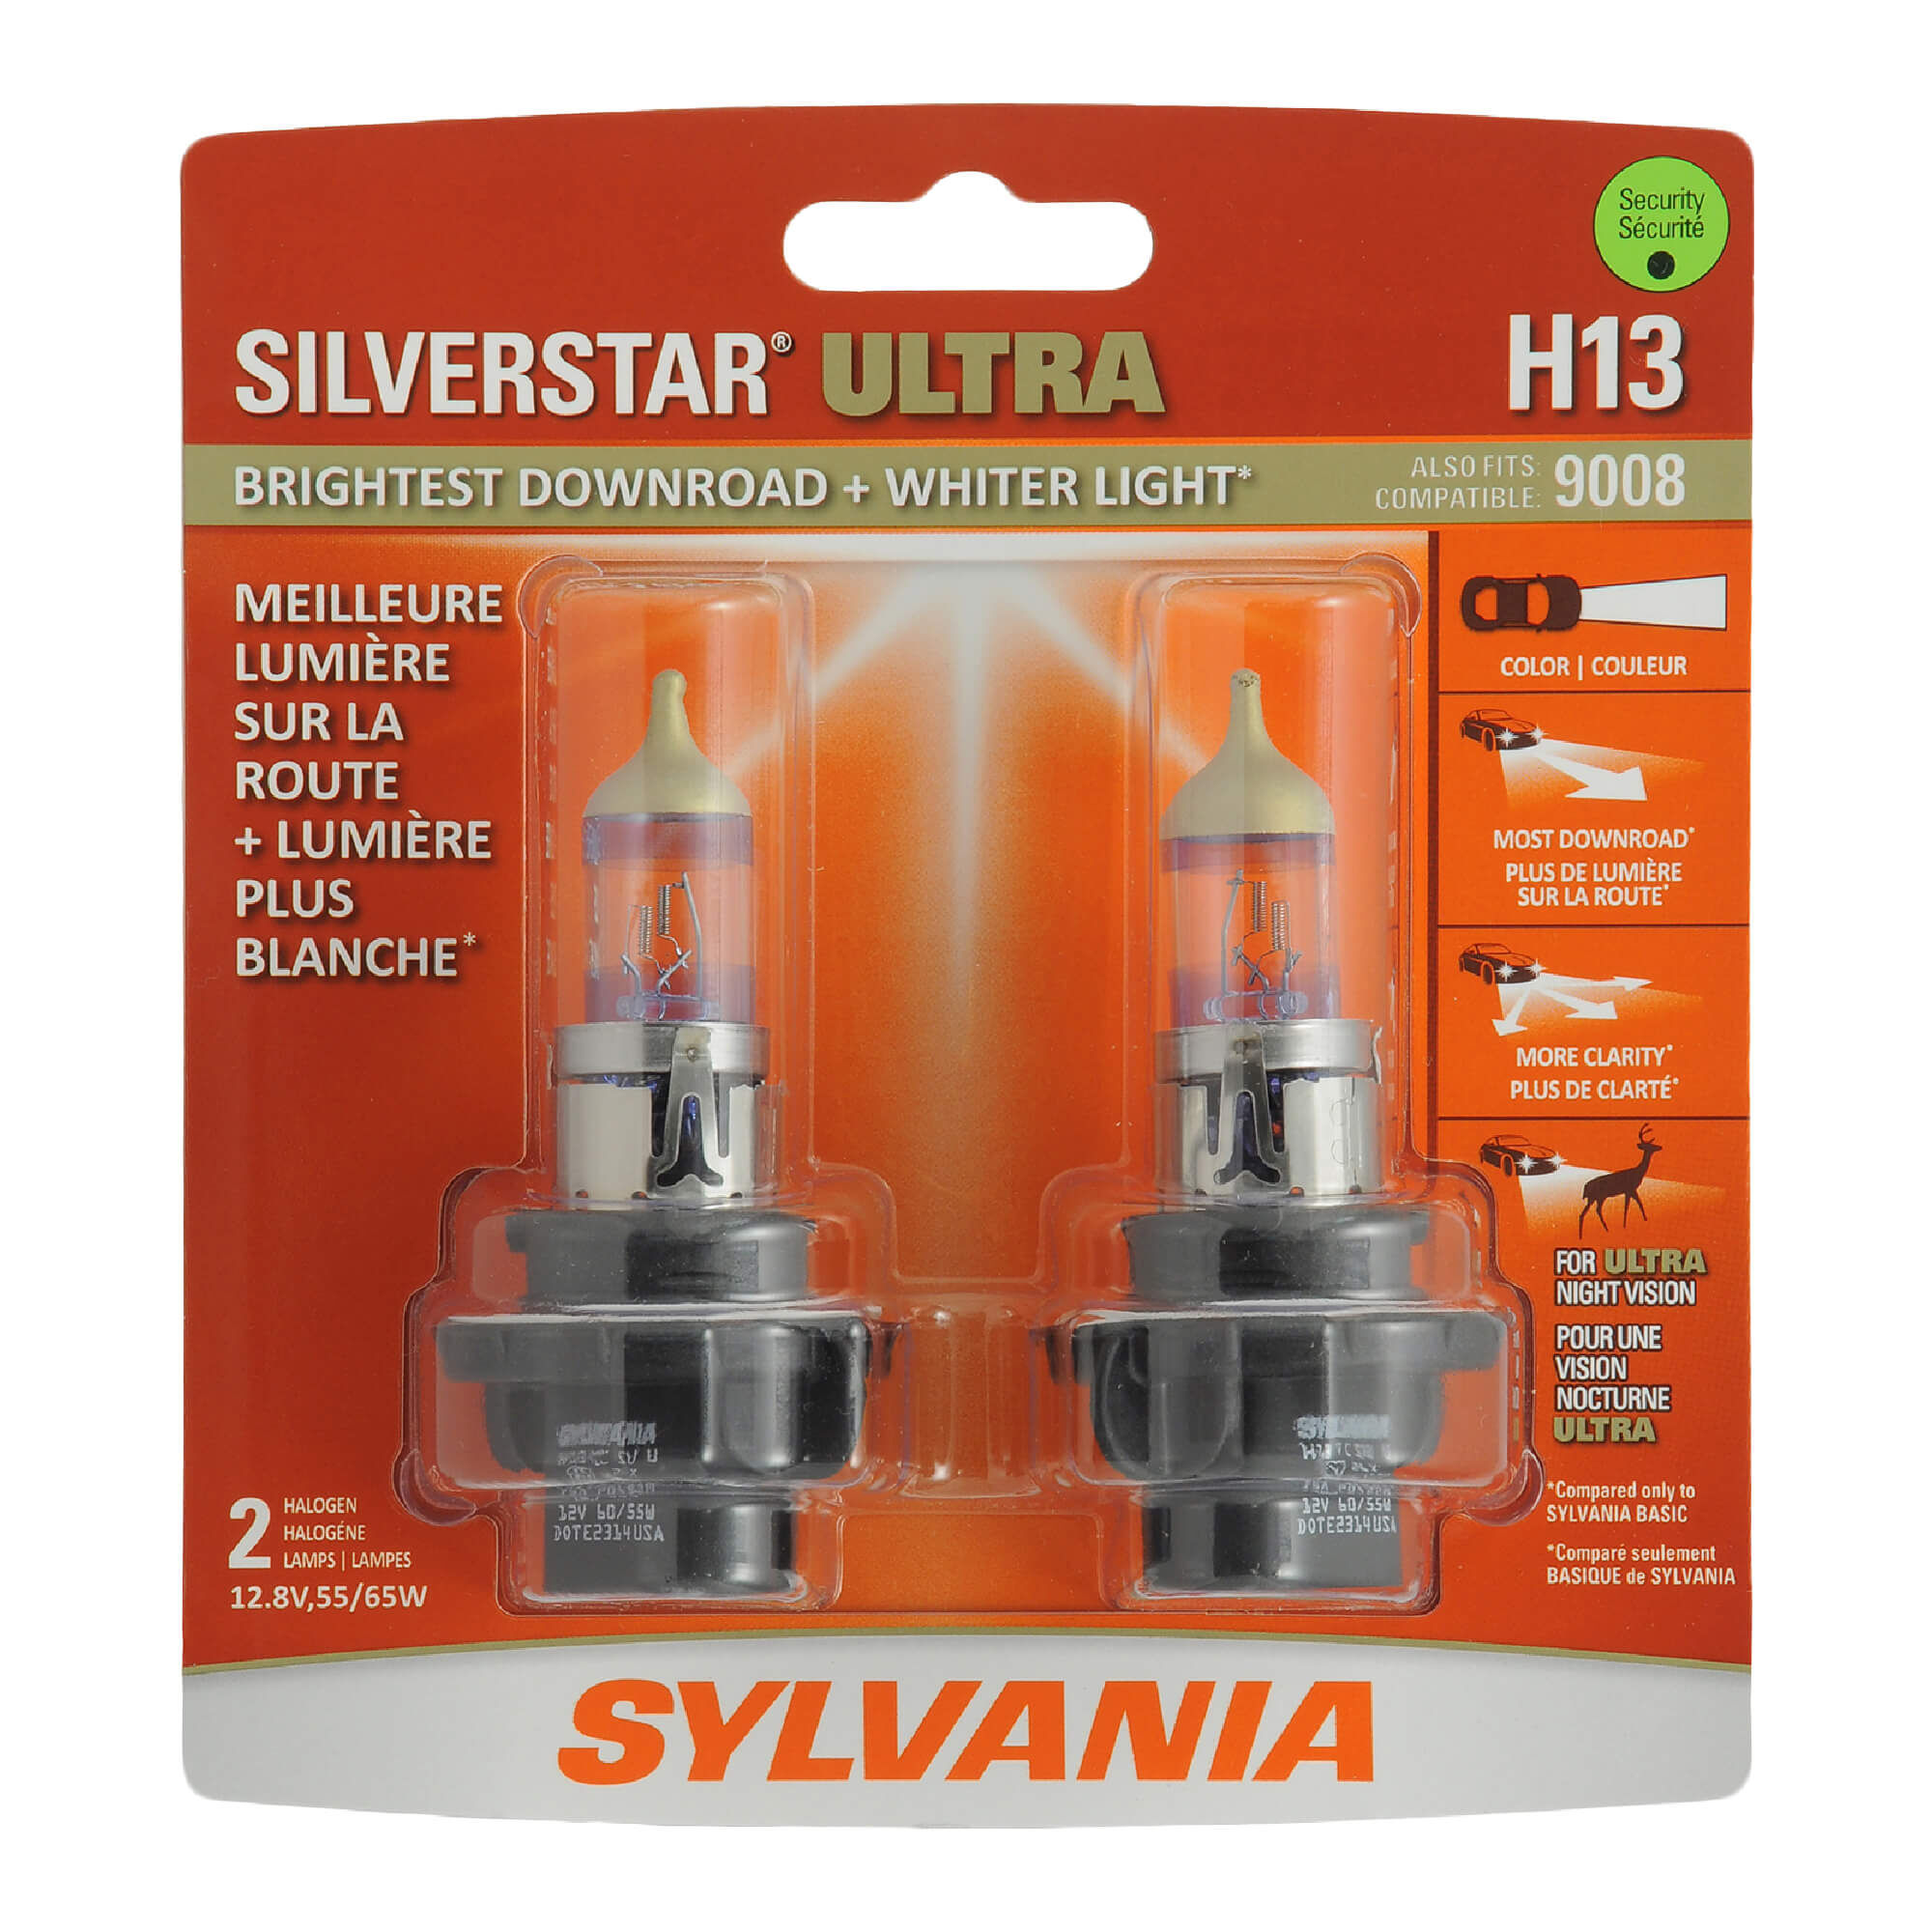 Sylvania Silverstar Ultra 9008 H13 65/55w Zwei Birnen Scheinwerfer Doppel Beam 